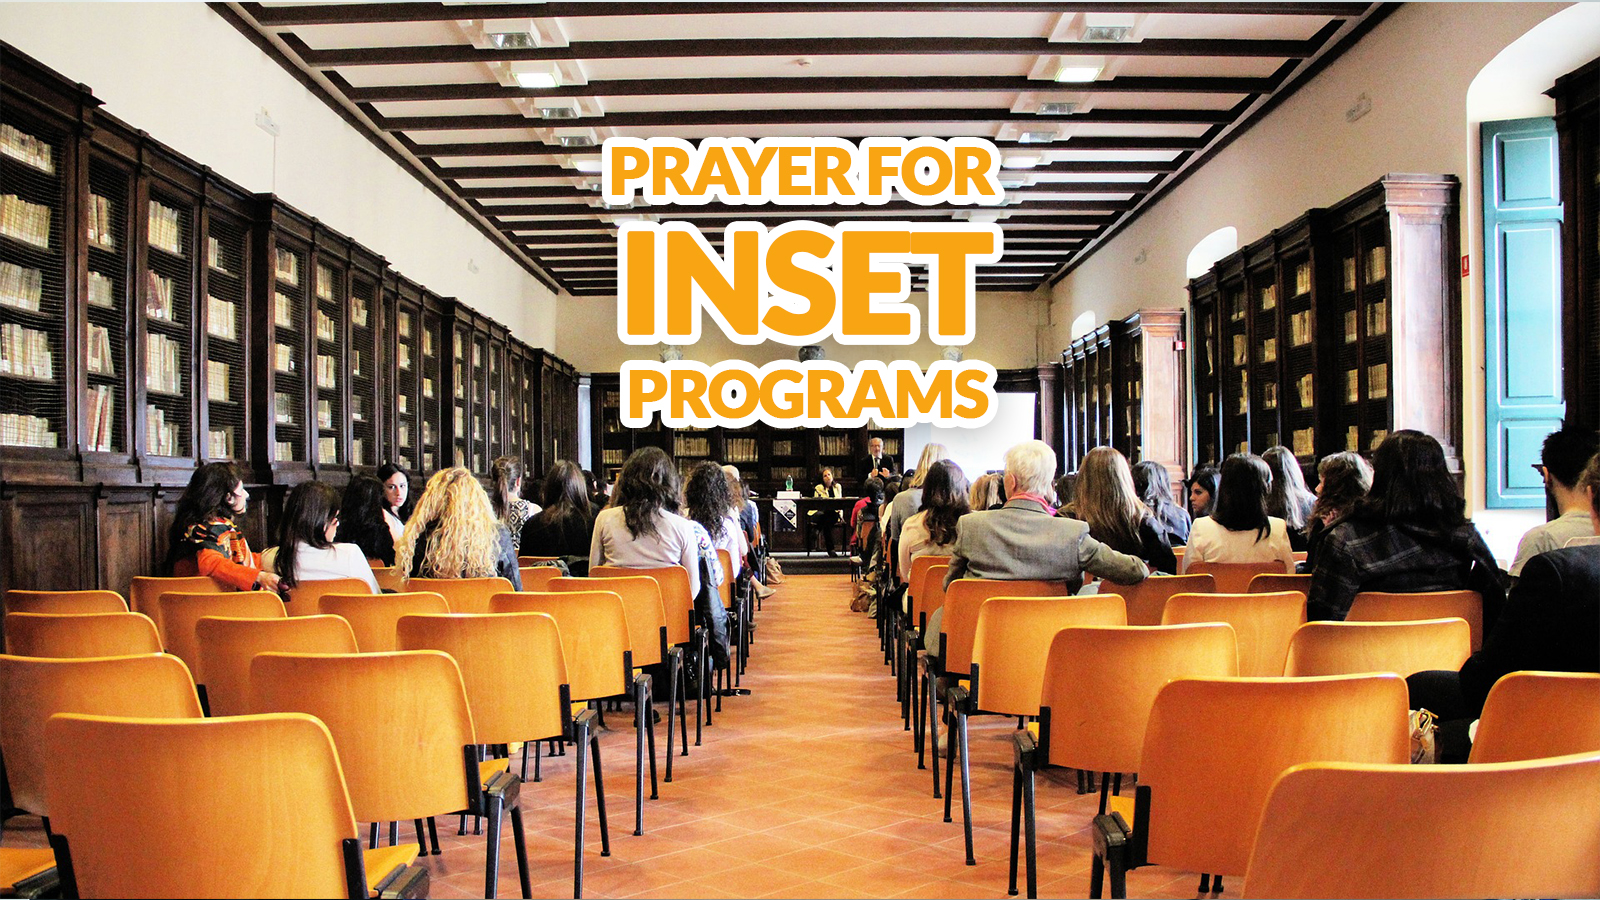 Prayer for INSET Programs